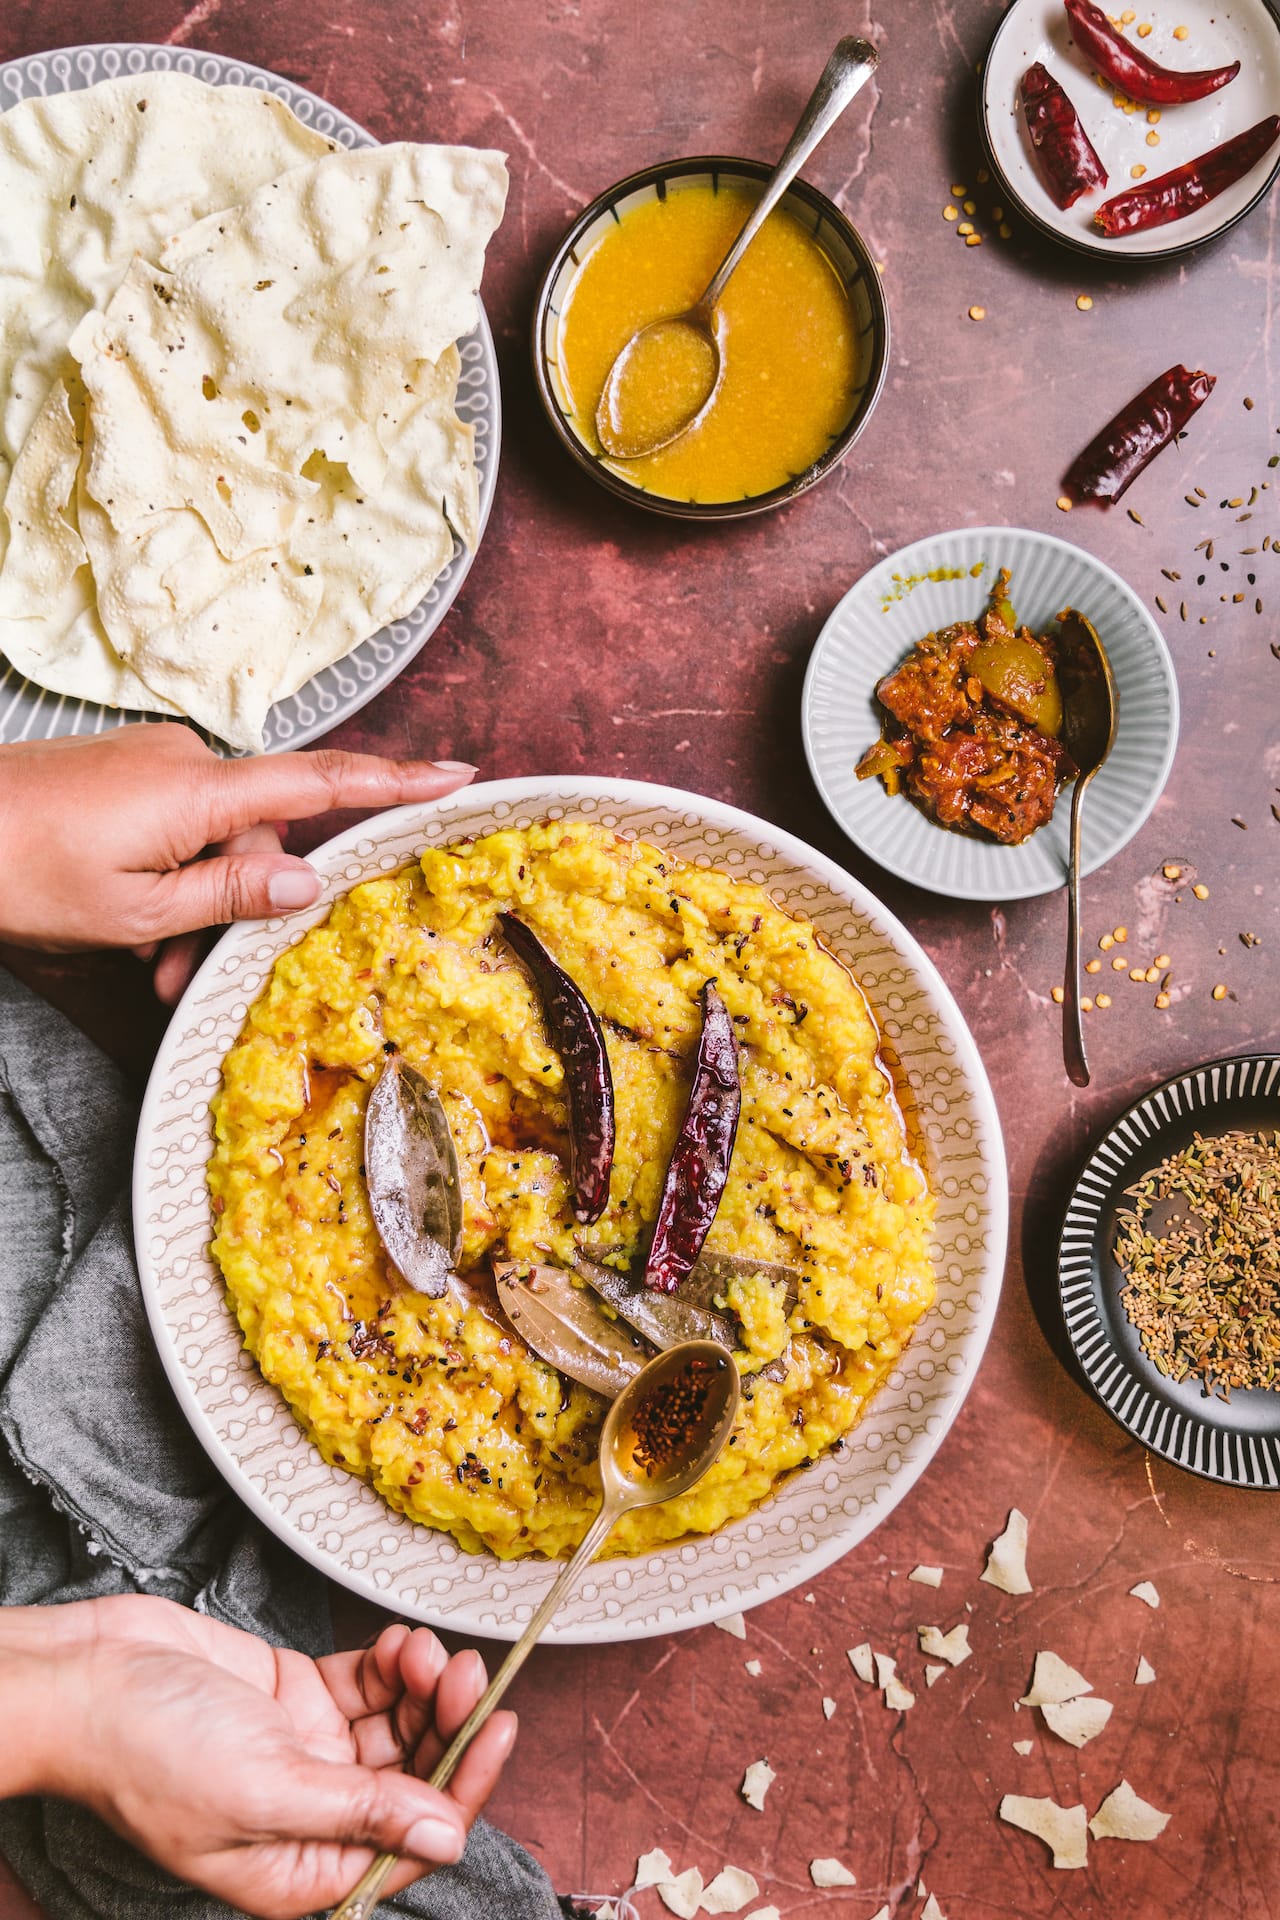 Classic Bengali Rice and Lentil Porridge dish